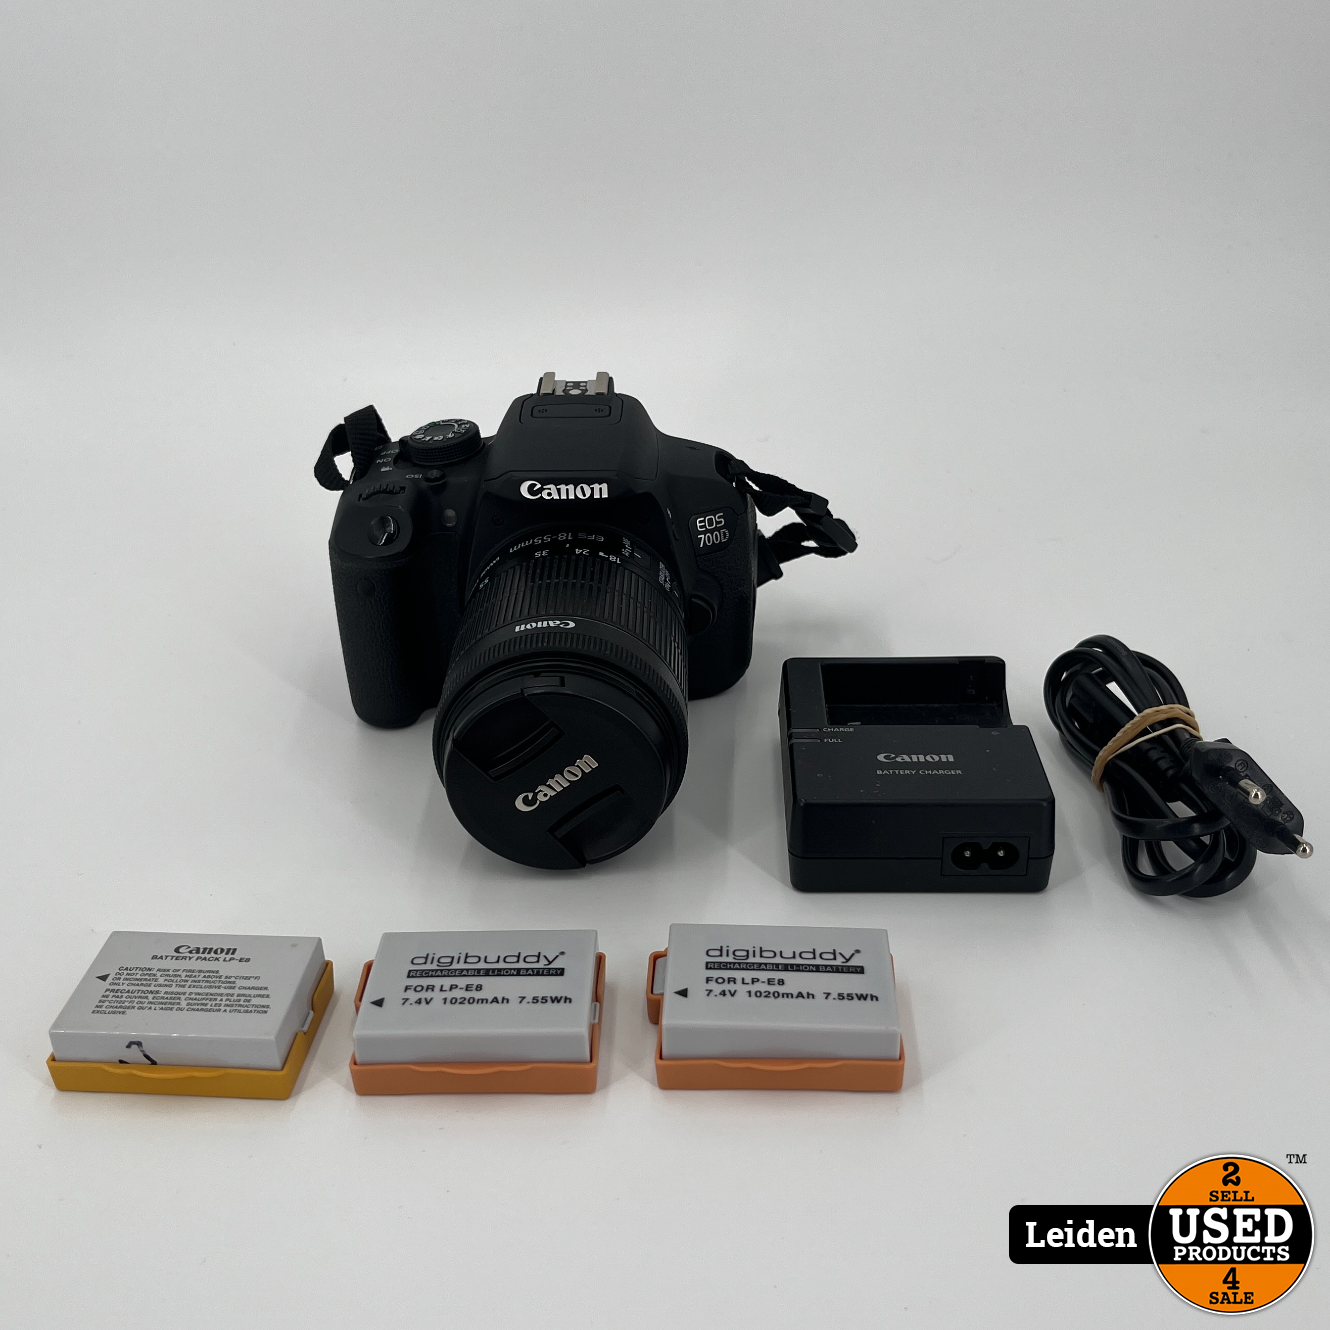 Onrustig Verzoekschrift Wonderbaarlijk Canon EOS 700D + EF-S 18-55mm f/3.5-5.6 IS STM - Used Products Leiden